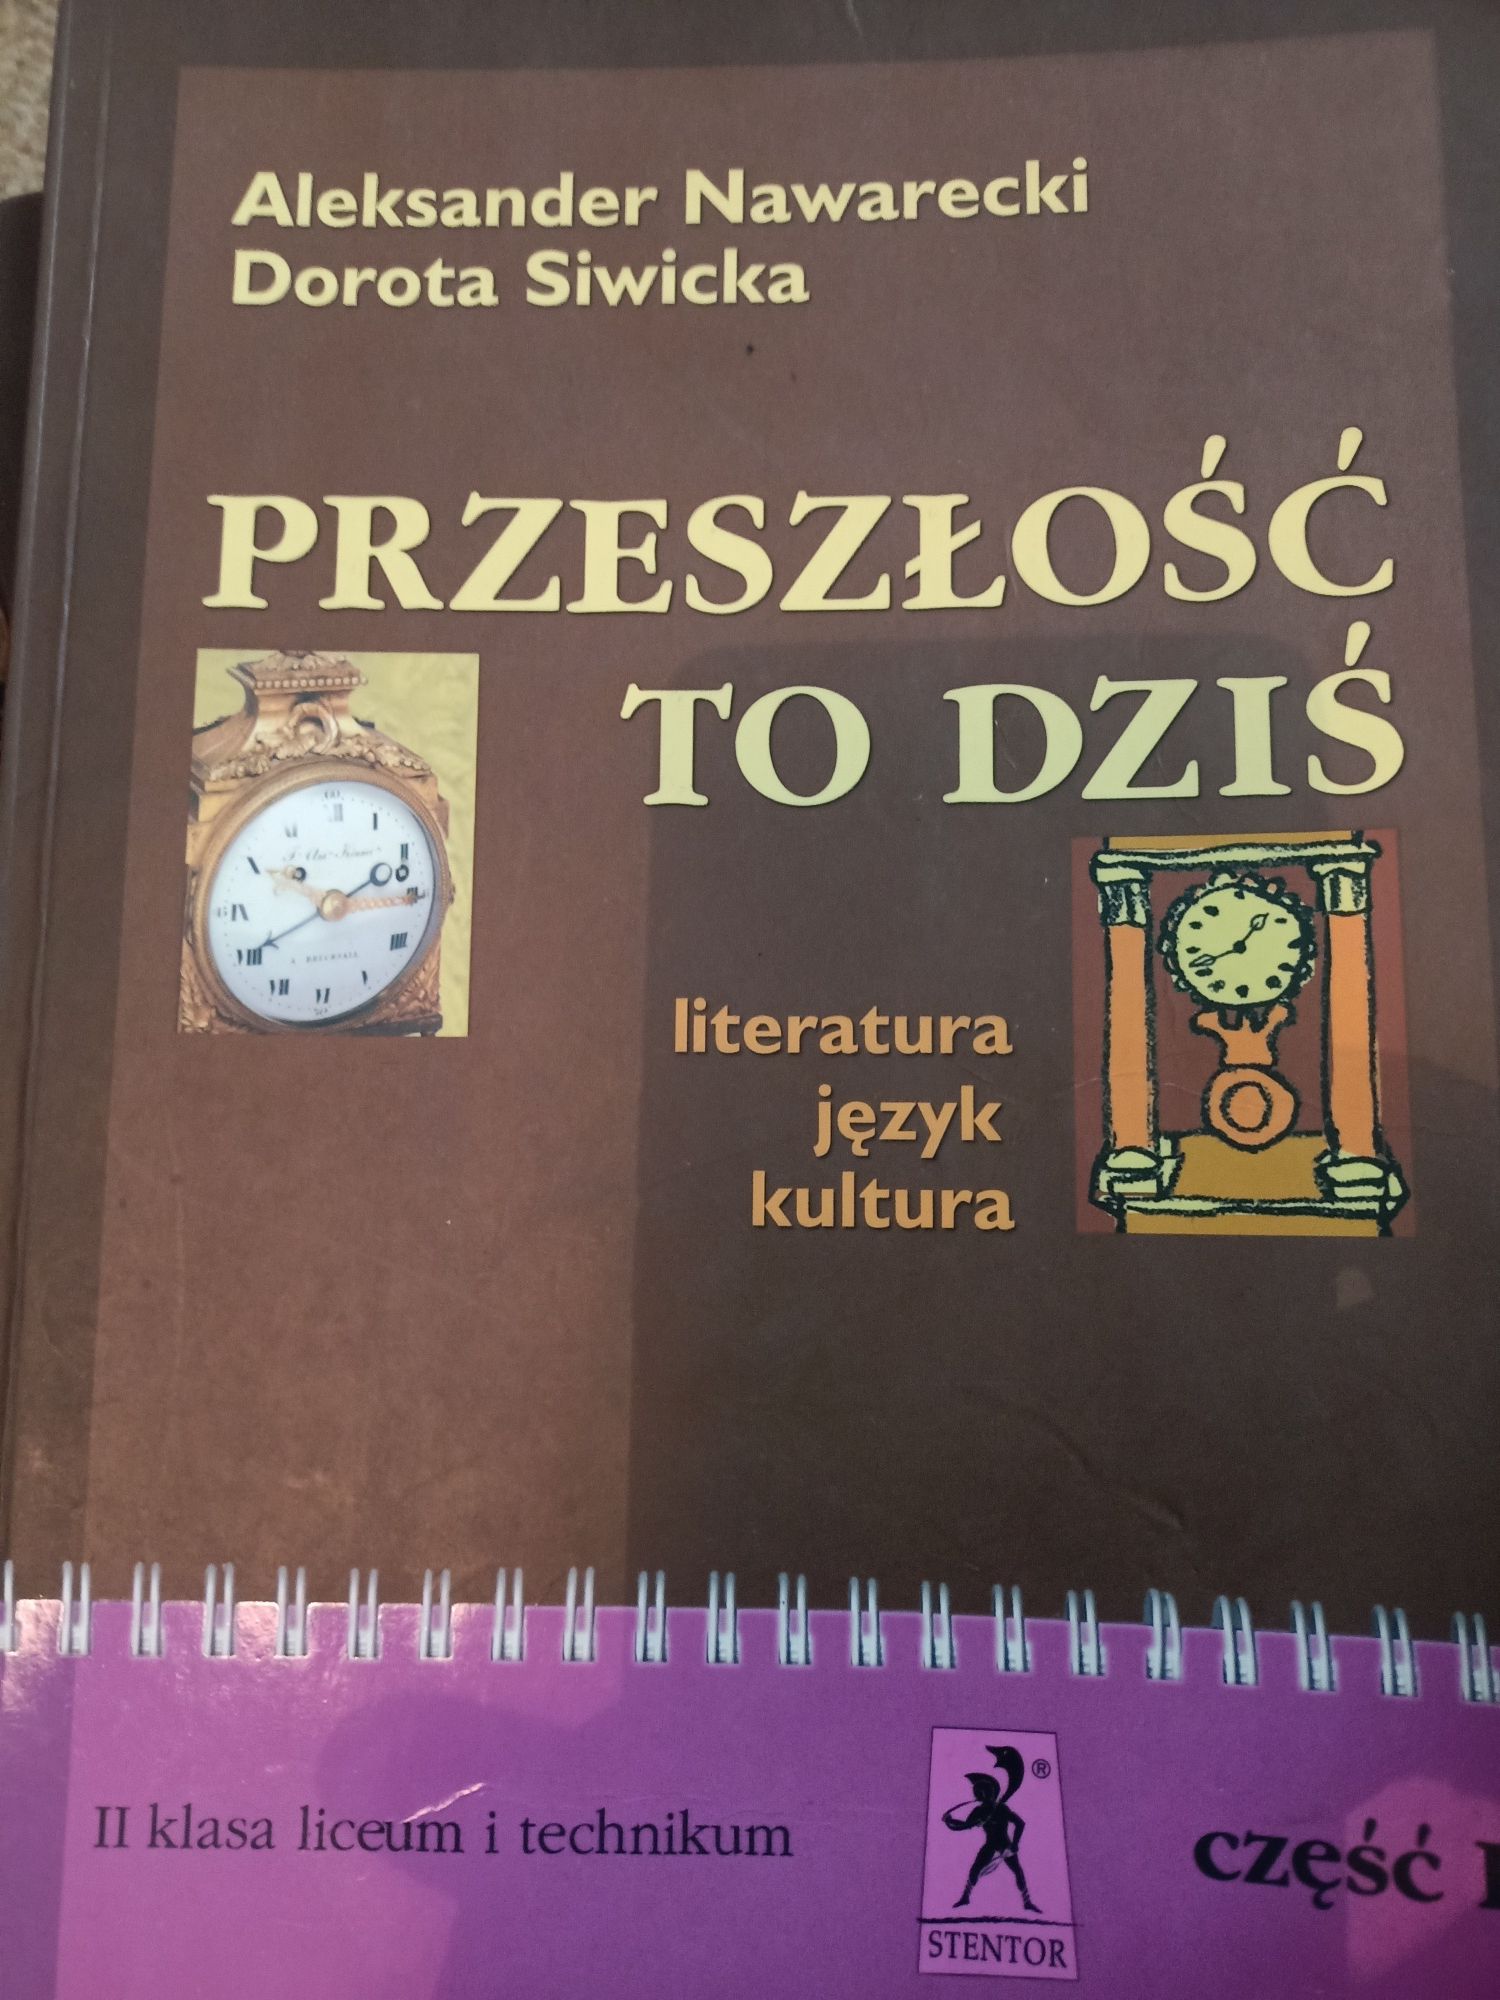 Język polski przeszłość to dziś cz 1 i cz2